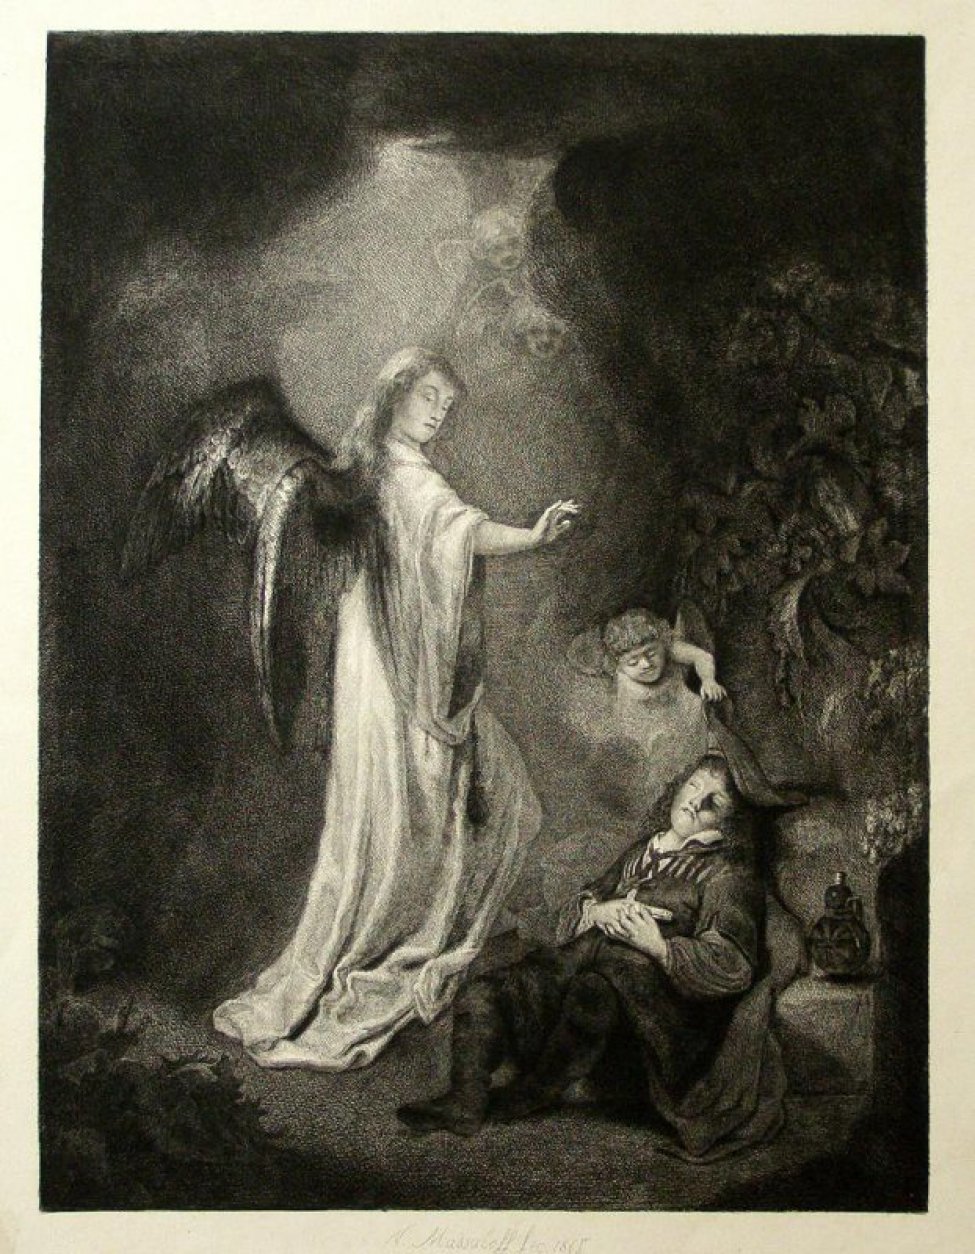 В центре композиции изображение ангела в светлой одежде распростершего руку над спящим юношей.